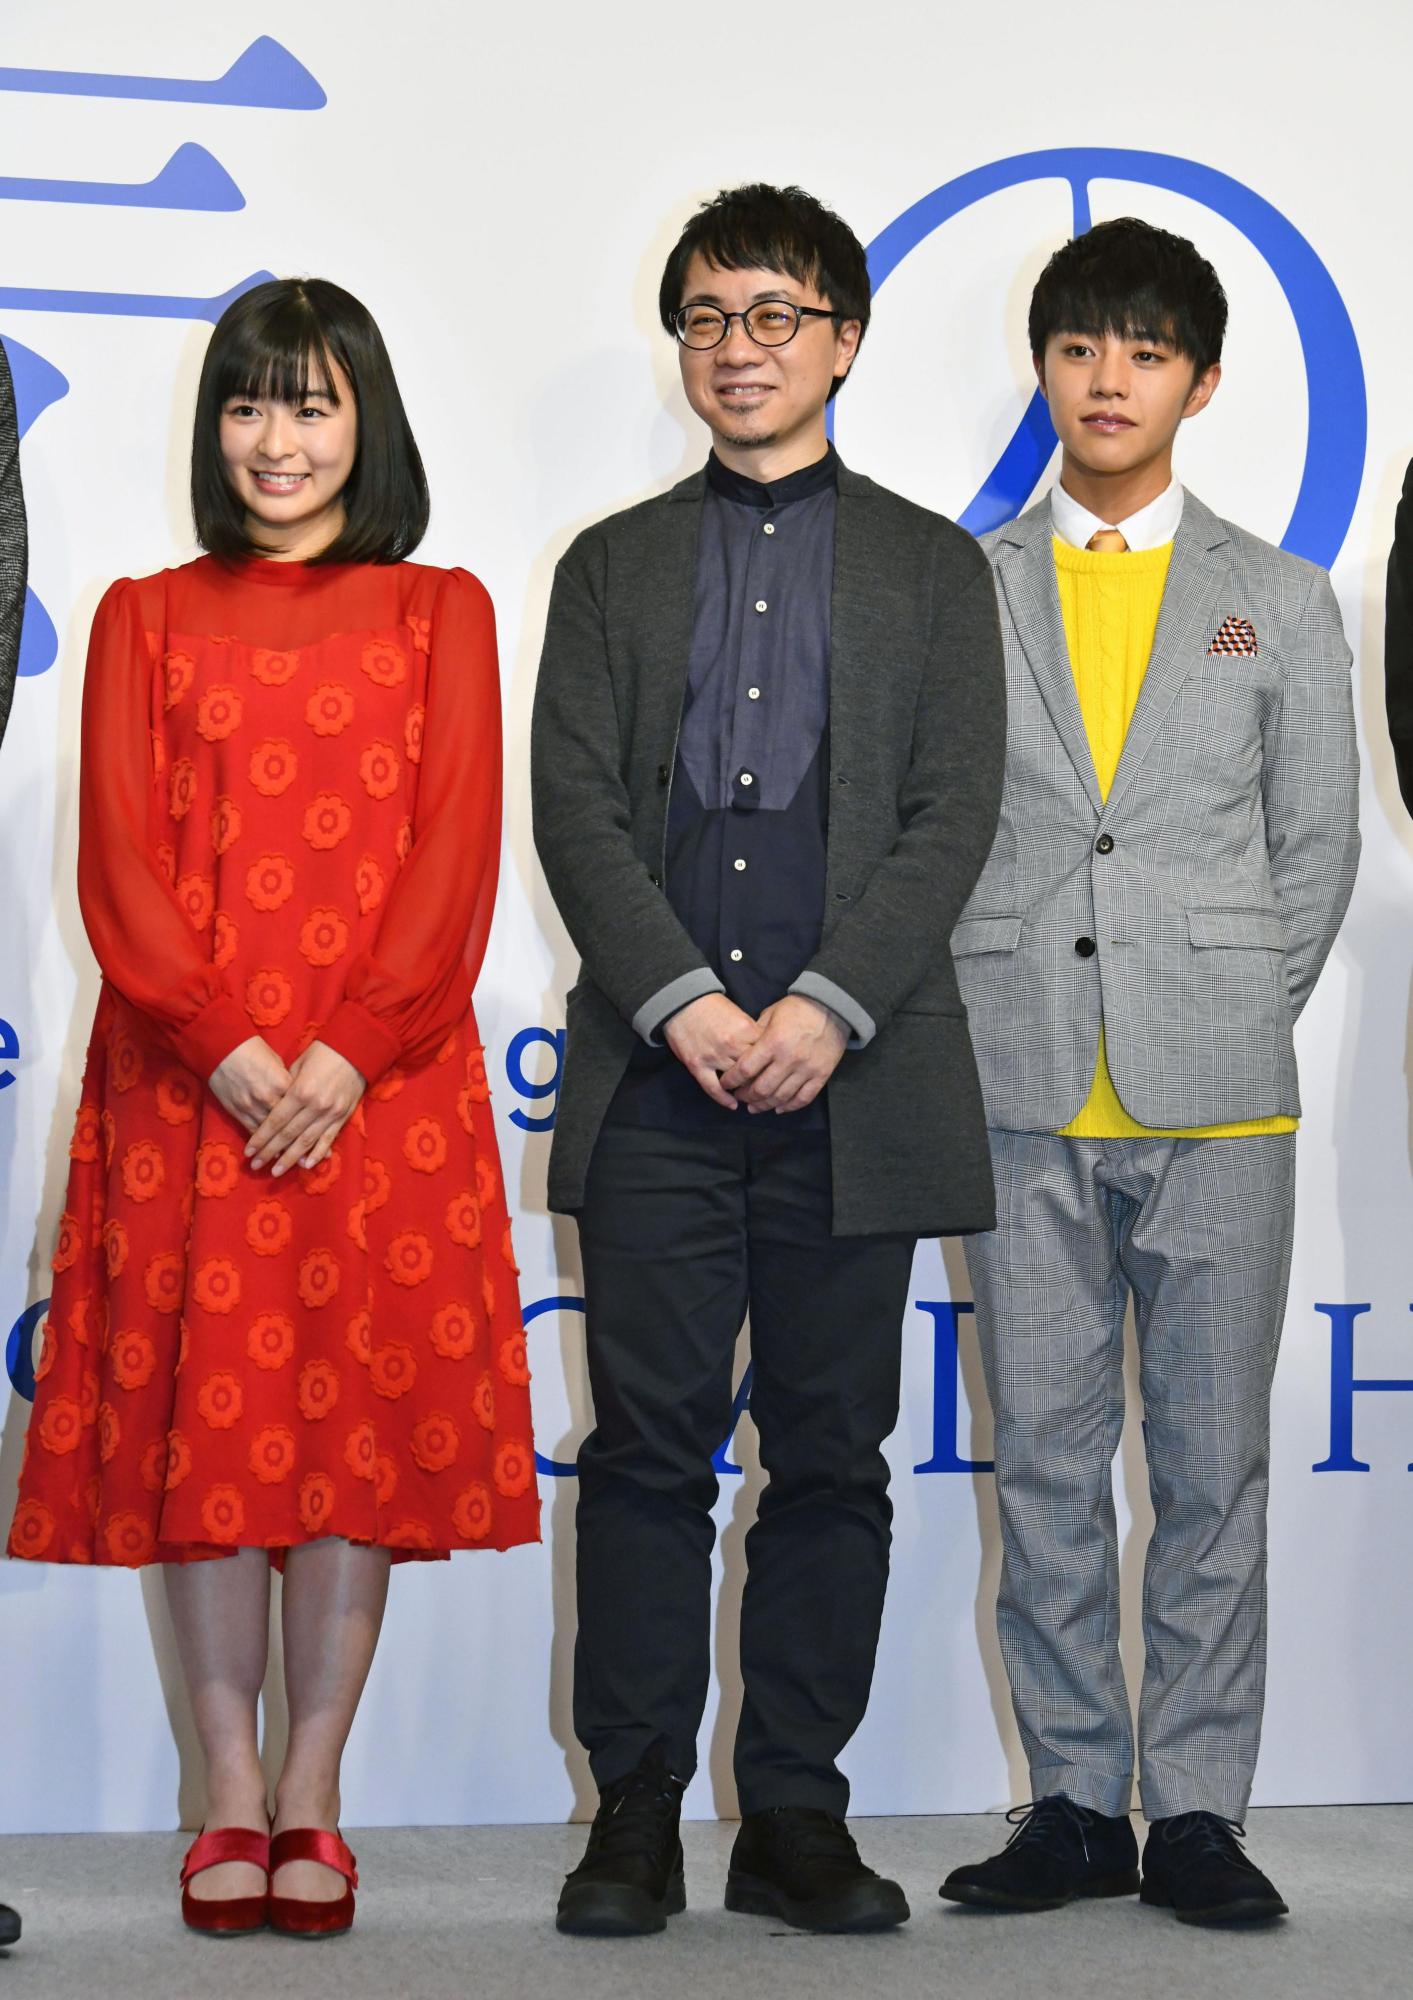 Conheça Kimi no Na Wa (Your Name), o novo filme de Makoto Shinkai